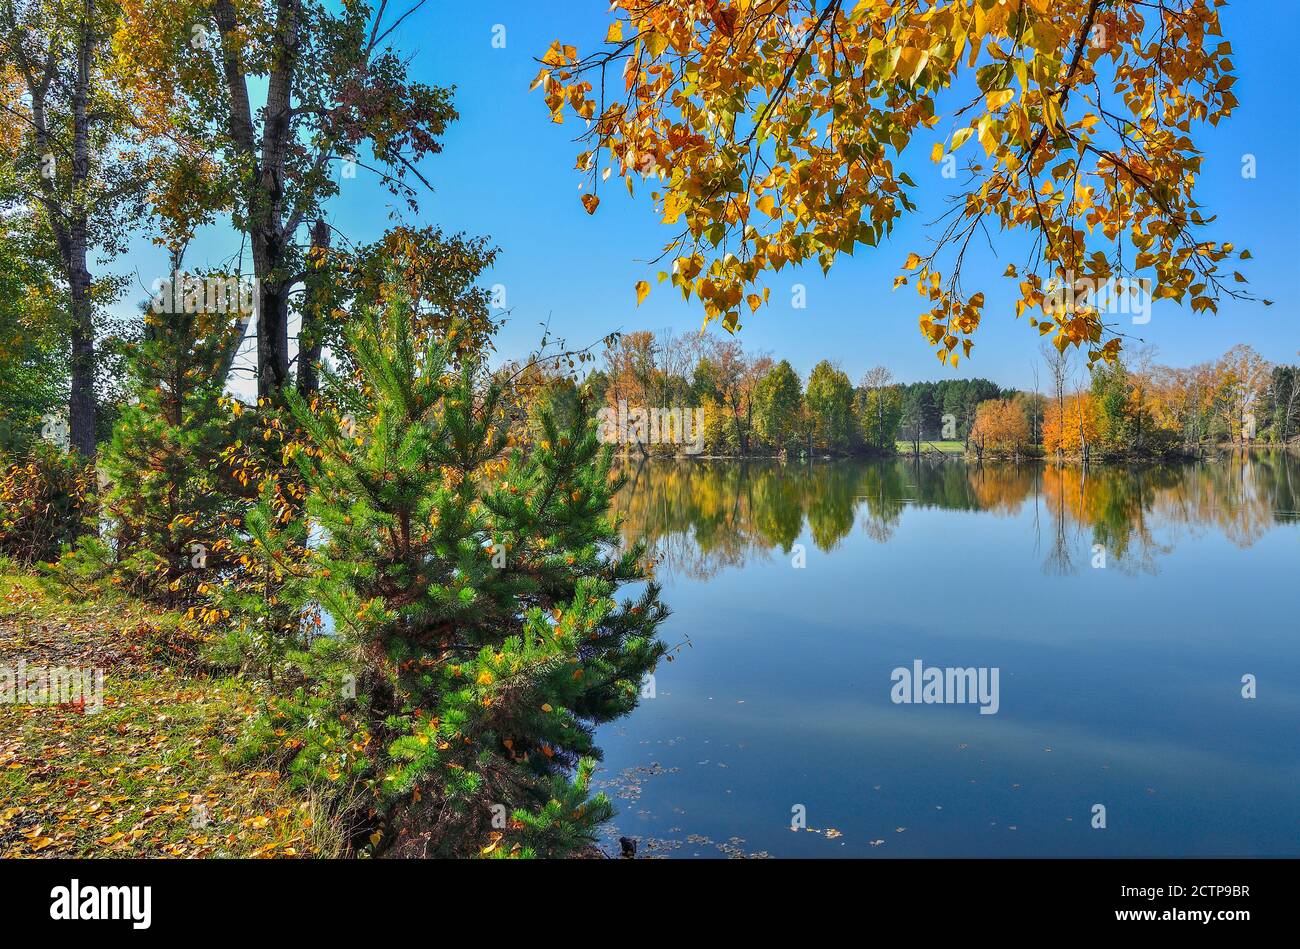 Warme, sonnige September Landschaft am Ufer des Sees. Blauer Himmel und goldenen Laub der Bäume auf der Oberfläche des Wassers wider - Schönheit des Herbstes Stockfoto